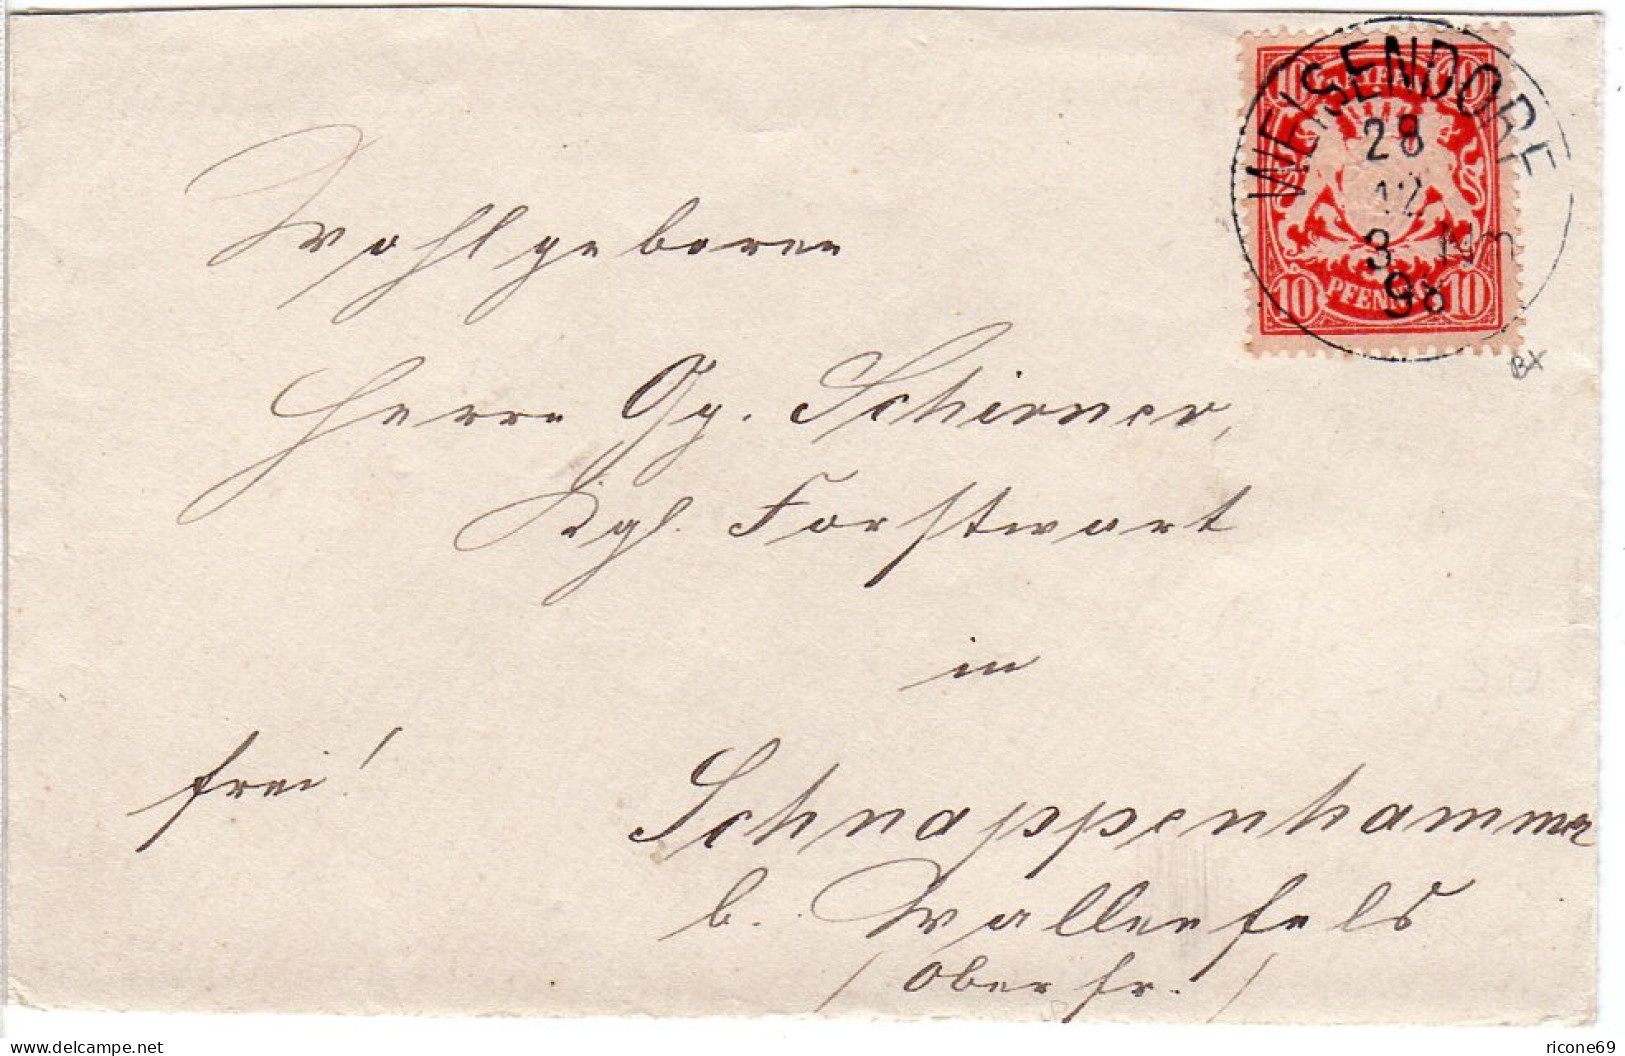 Bayern 1898, K1 WEISENDORF Auf Brief M. 10 Pf. N. Schnappenhammer B. Wallenfels - Sammlungen